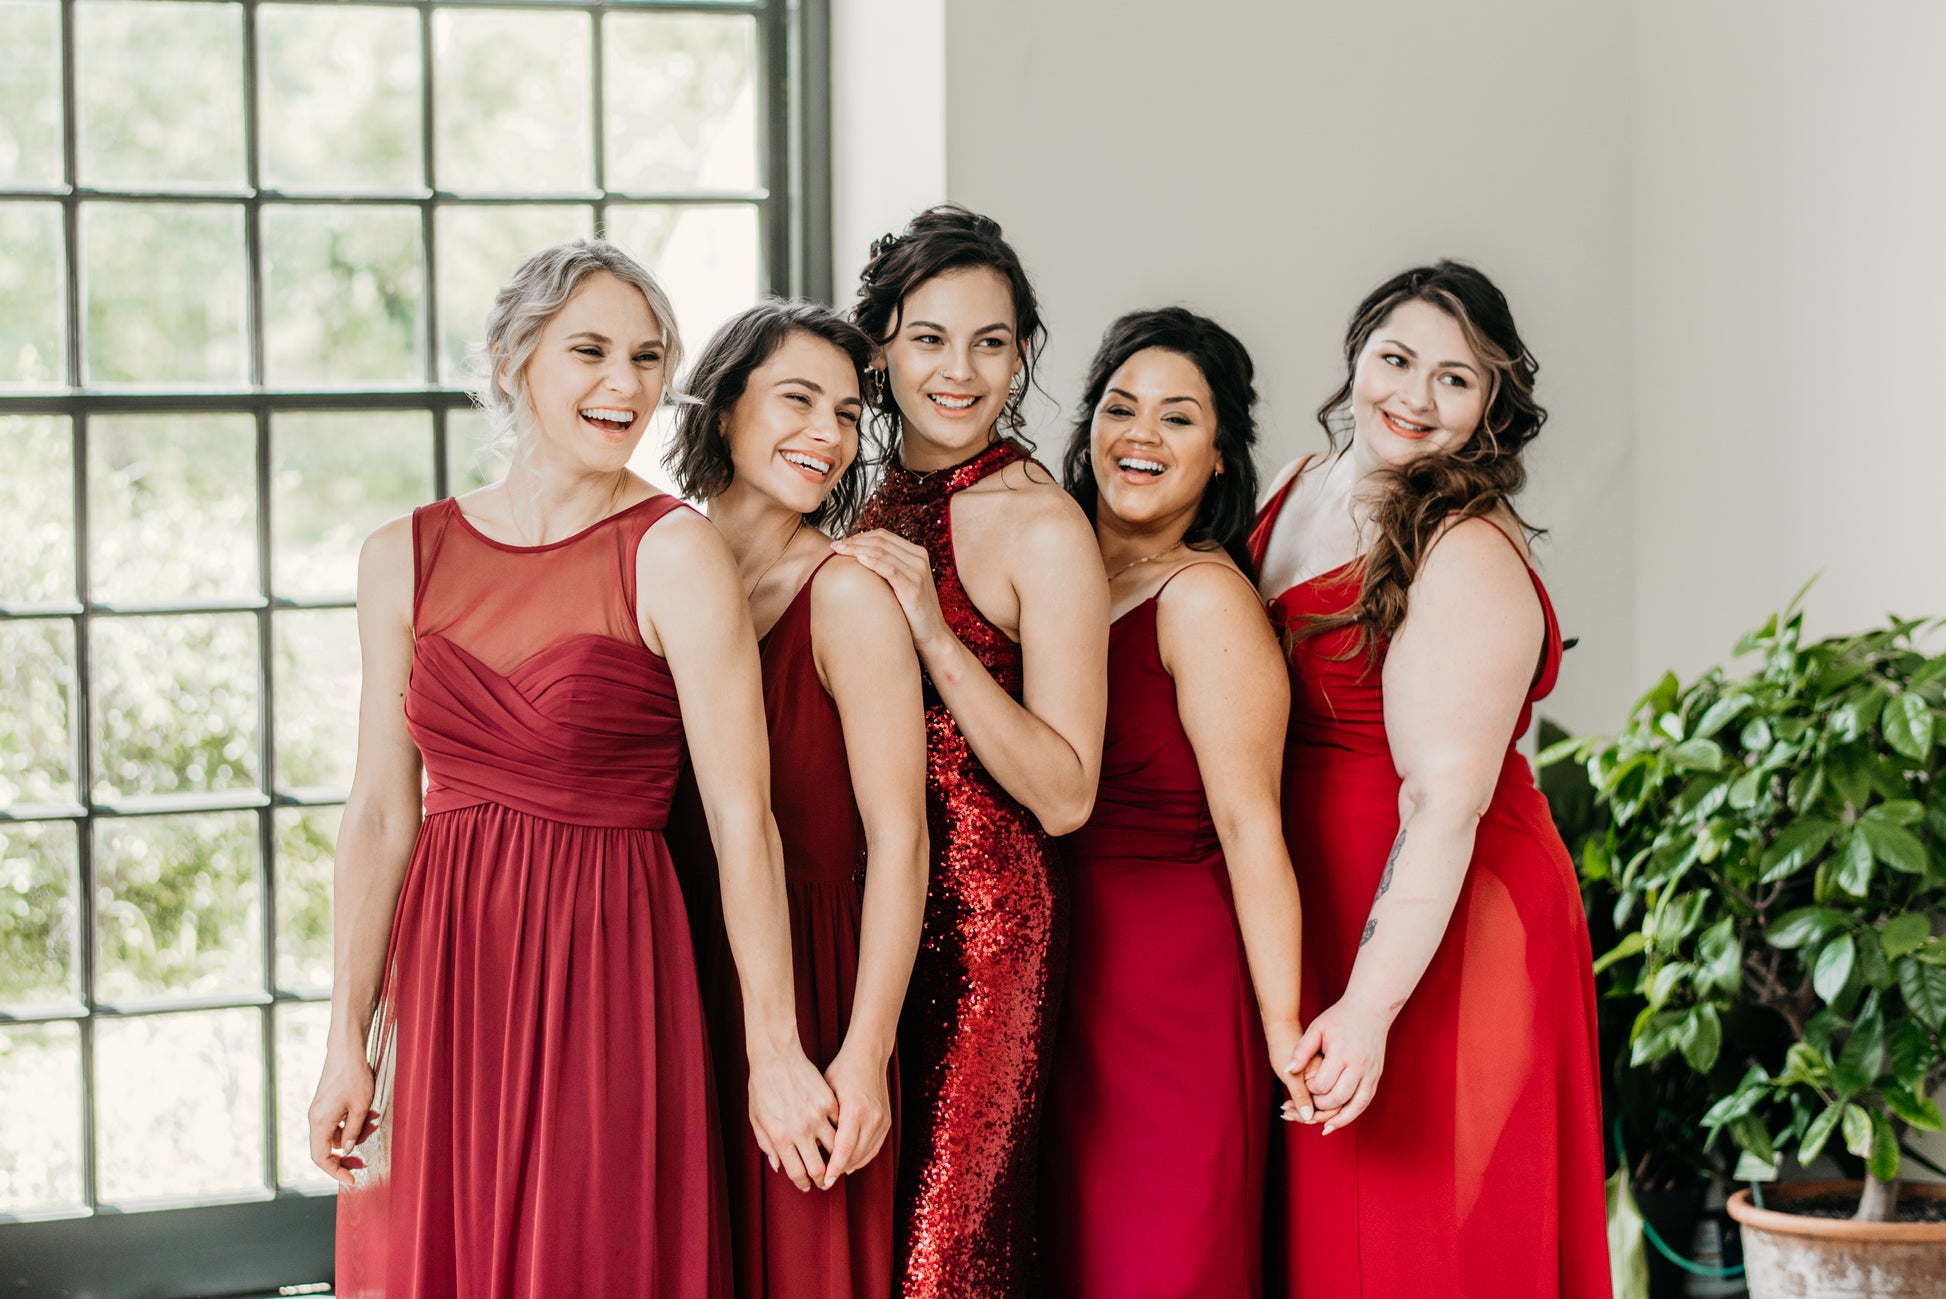 Katie (far right) wears the Ann Dress